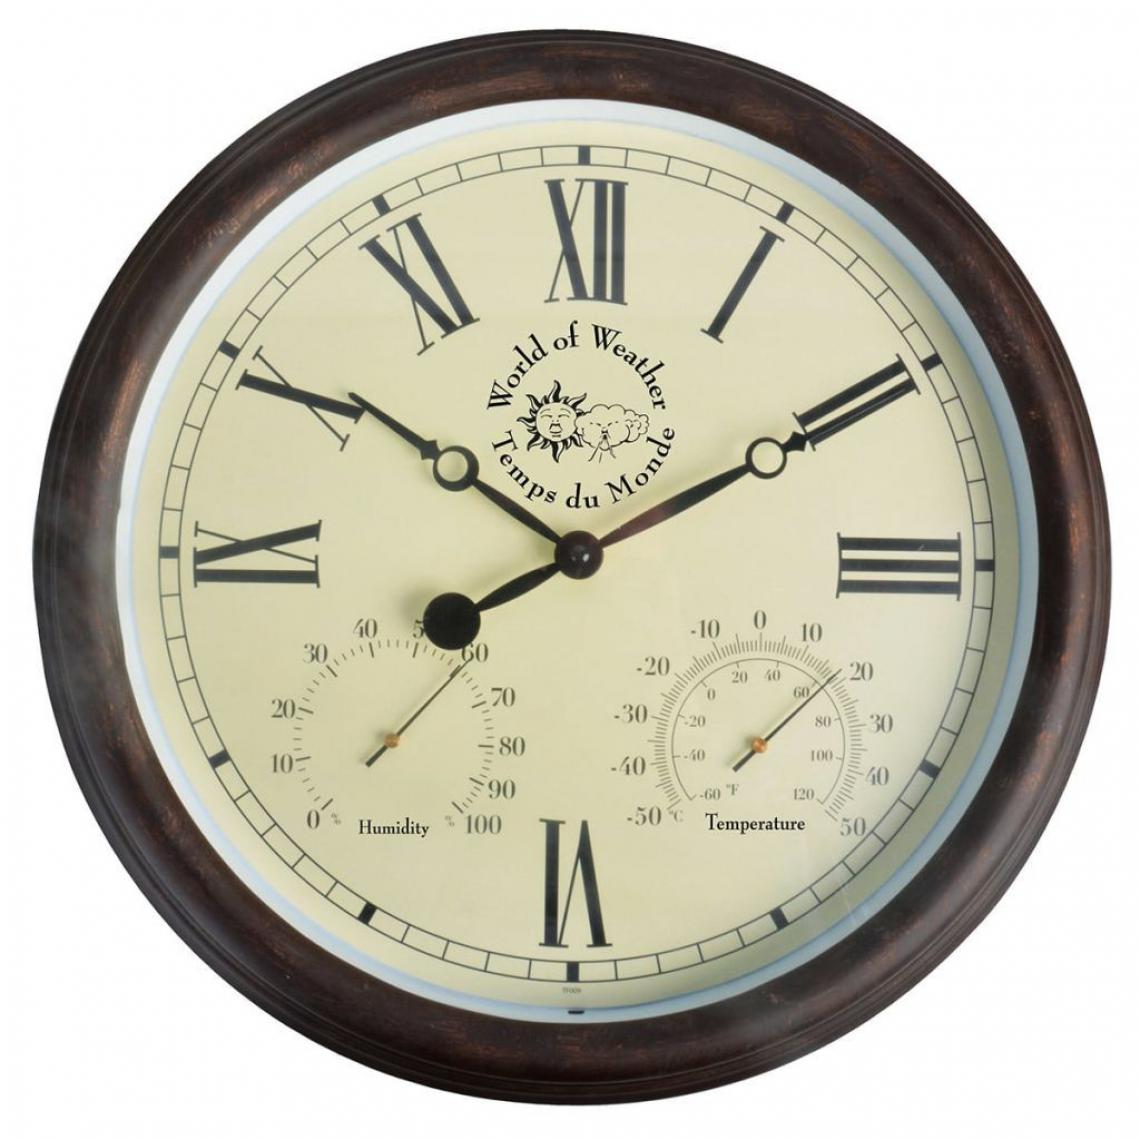 Decoshop26 - Horloge murale de station avec thermo-hygromètre 30,5 cm TF009 DEC022208 - Horloges, pendules